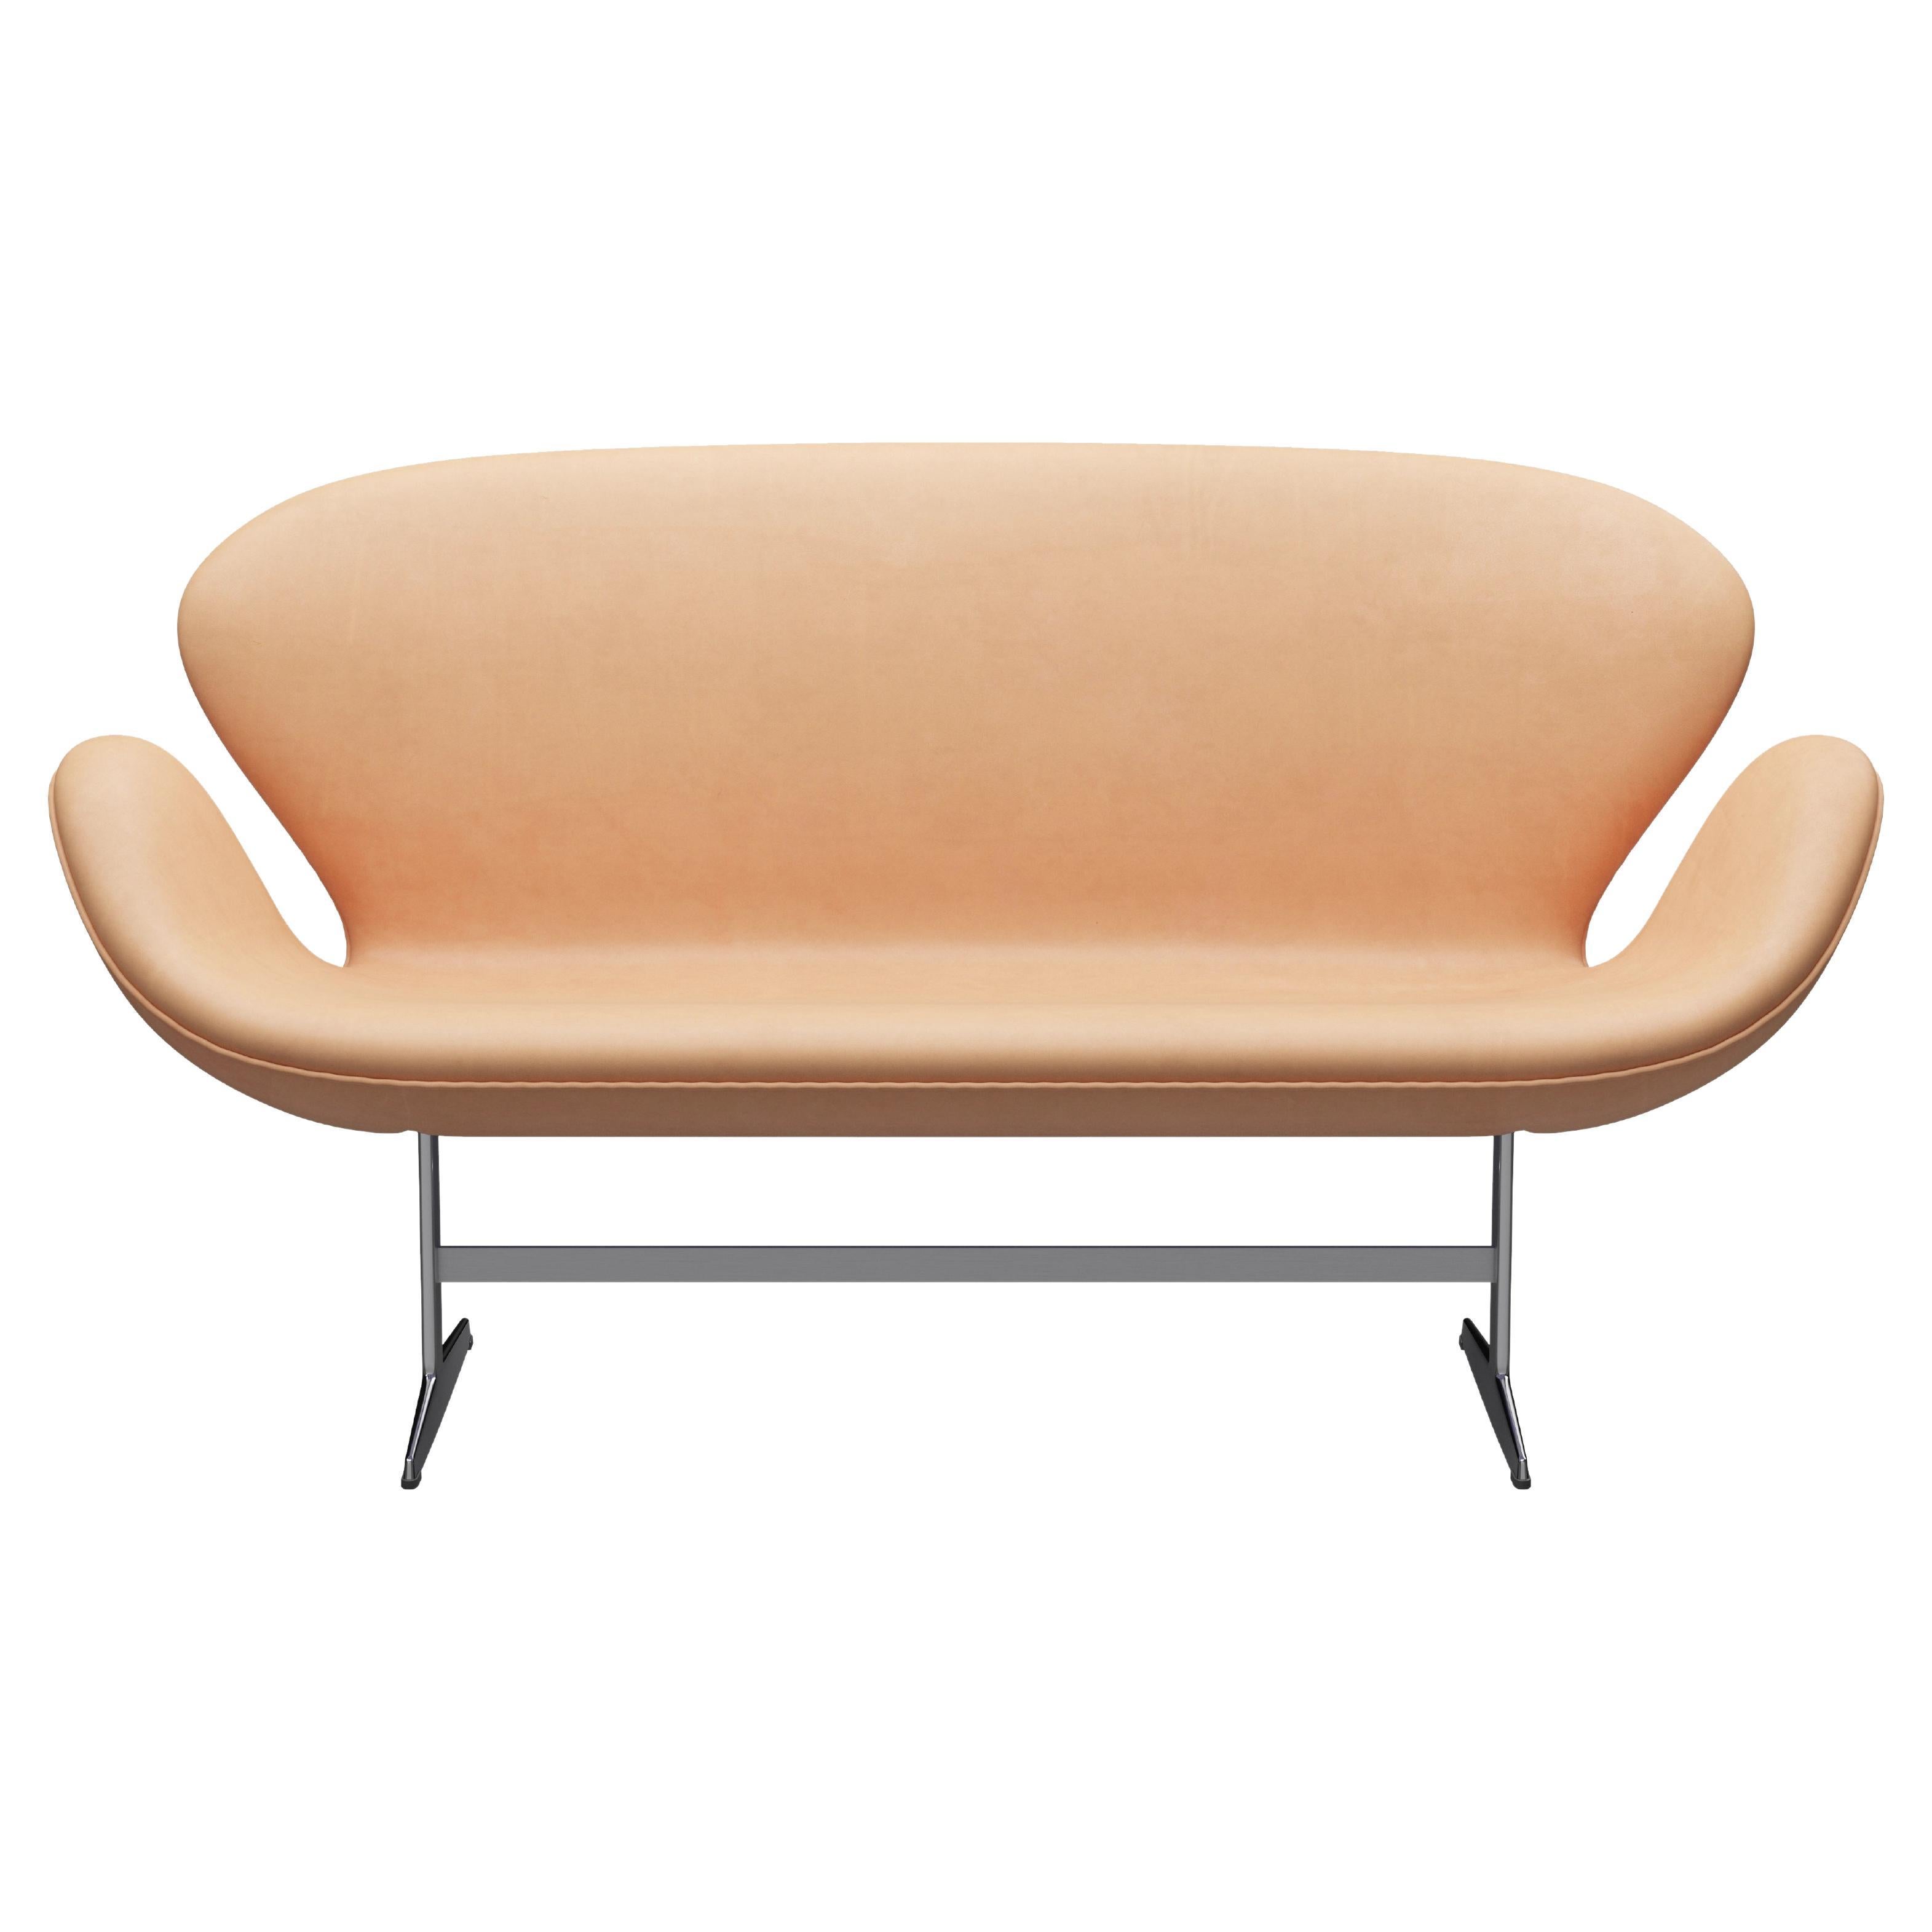 Arne Jacobsen 'Swan' Sofa for Fritz Hansen in Leather Upholstery (Cat. 5) For Sale